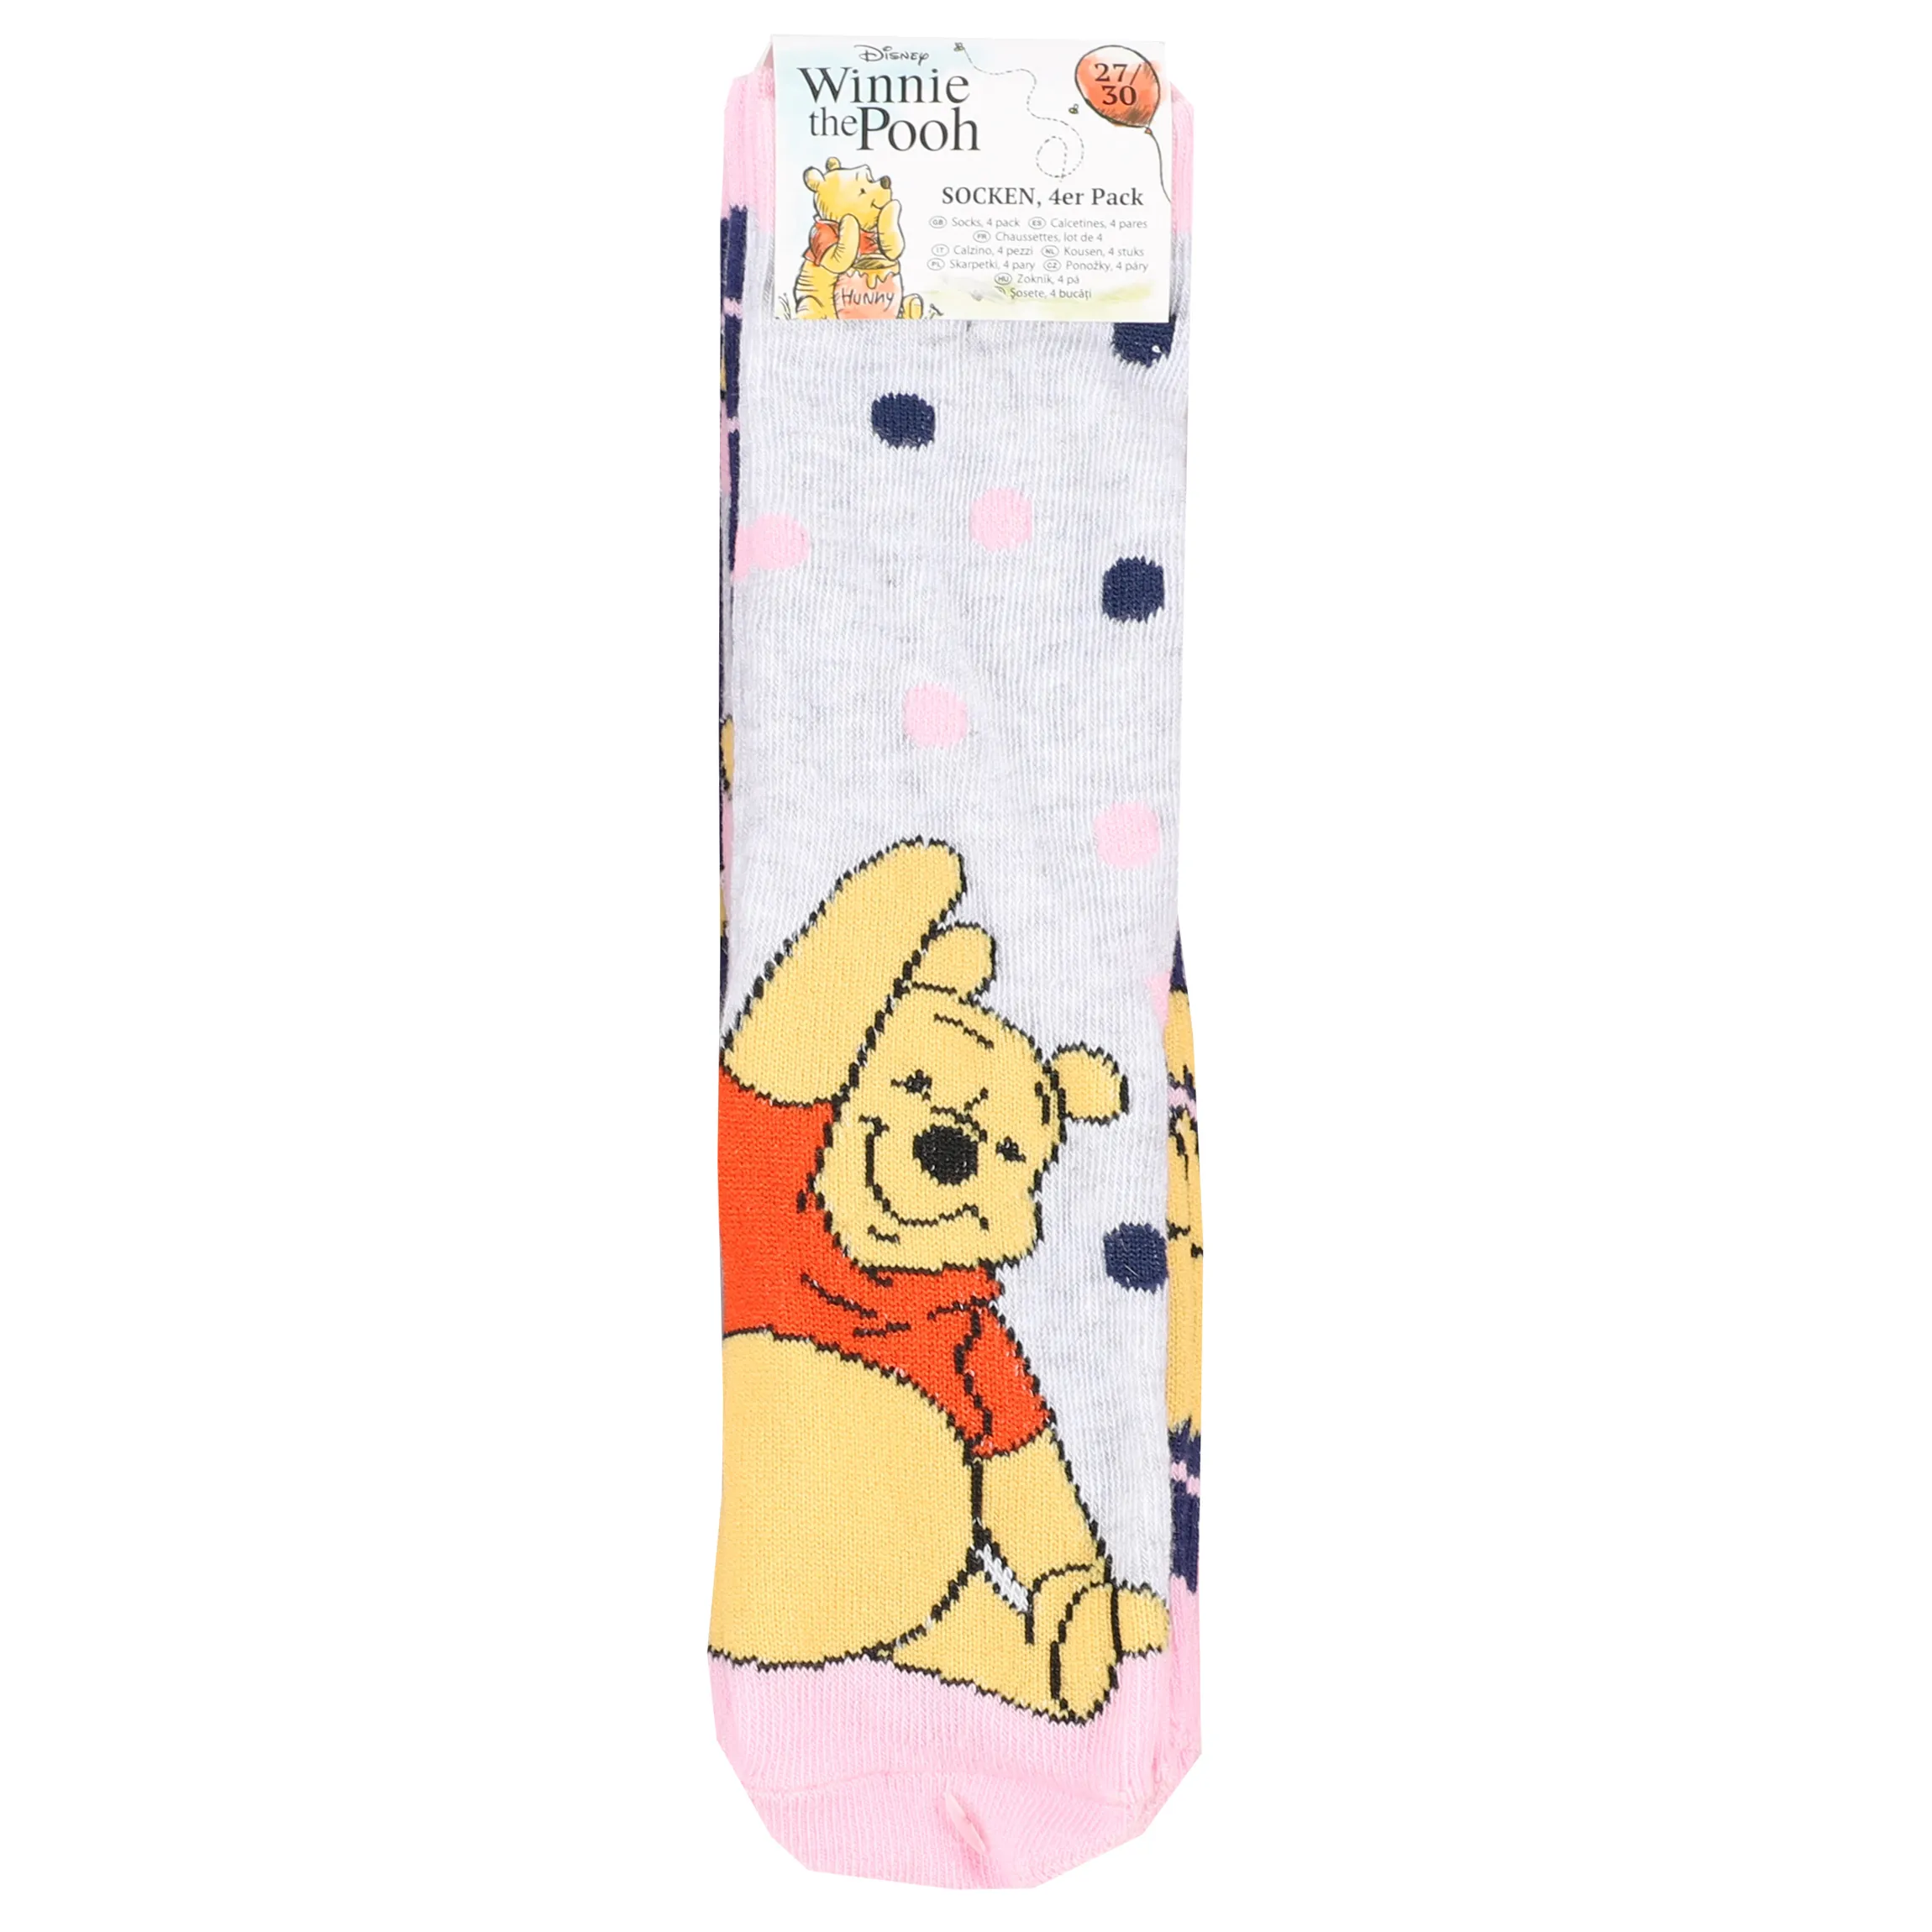 Winnie Pooh Km Socken 4er Pack Winnie Pooh Bunt 886142 BUNT 1